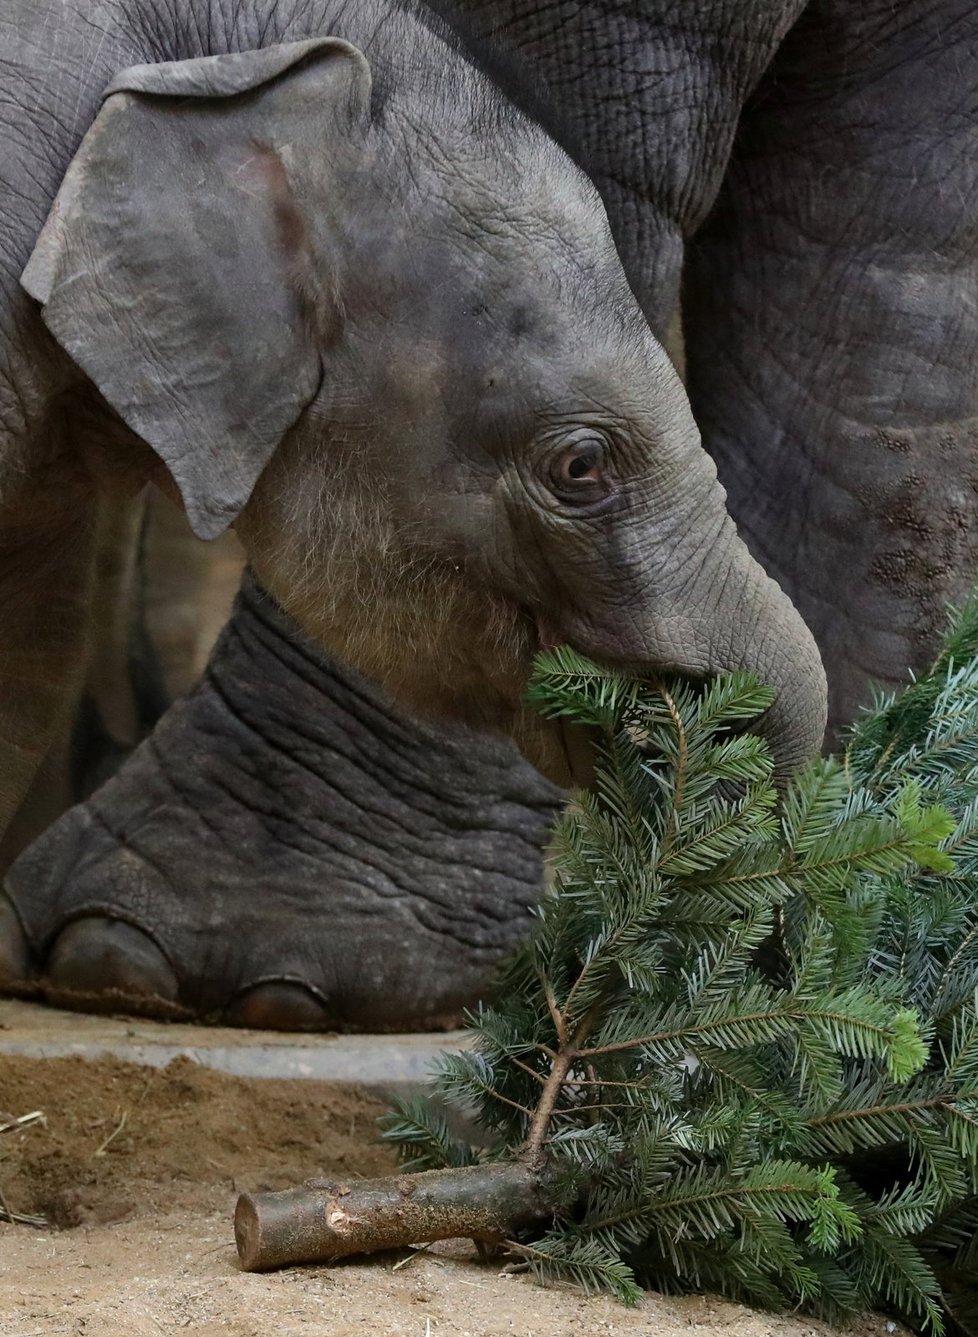 Zvířata v pražské zoo měla z vánočních stromků obrovskou radost.